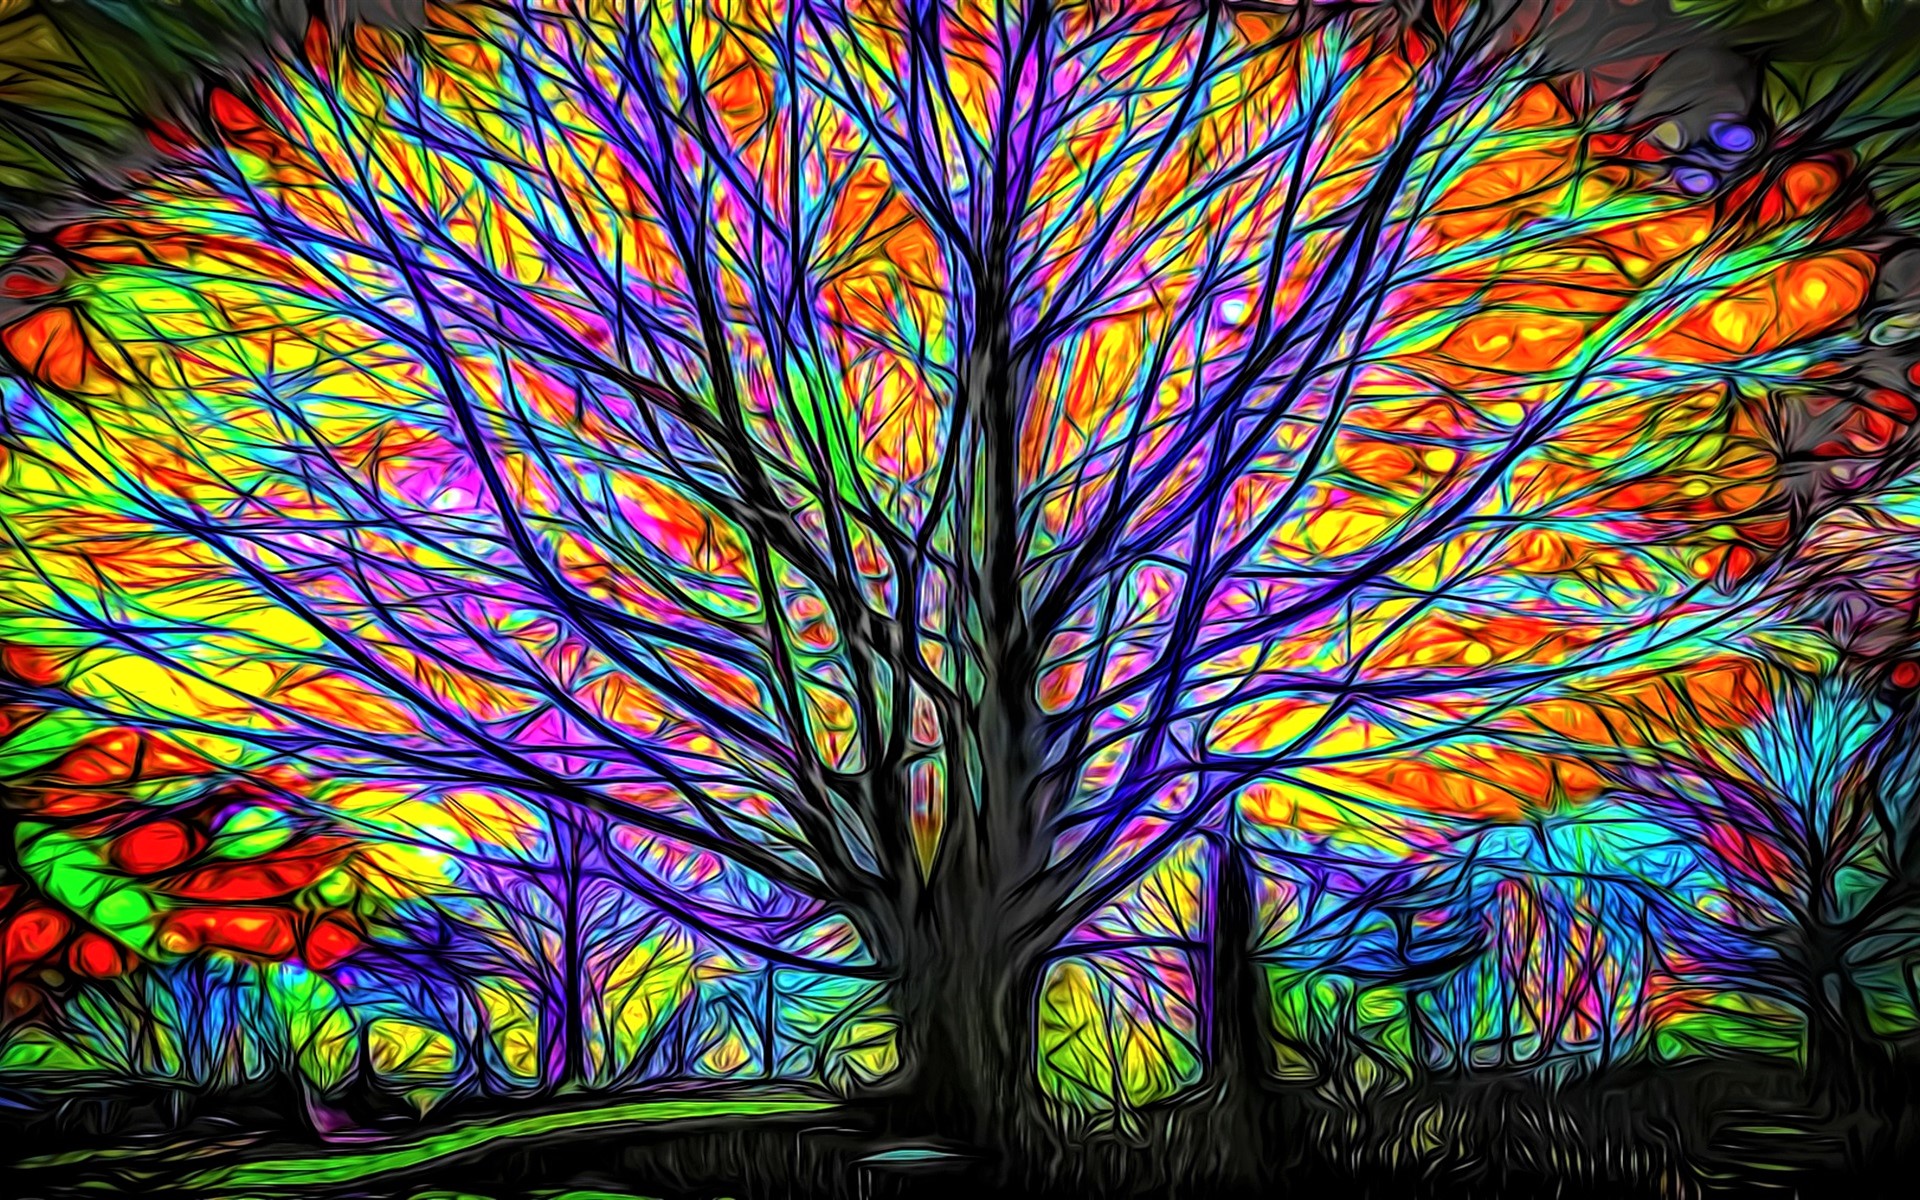 Дерево с разноцветными листьями